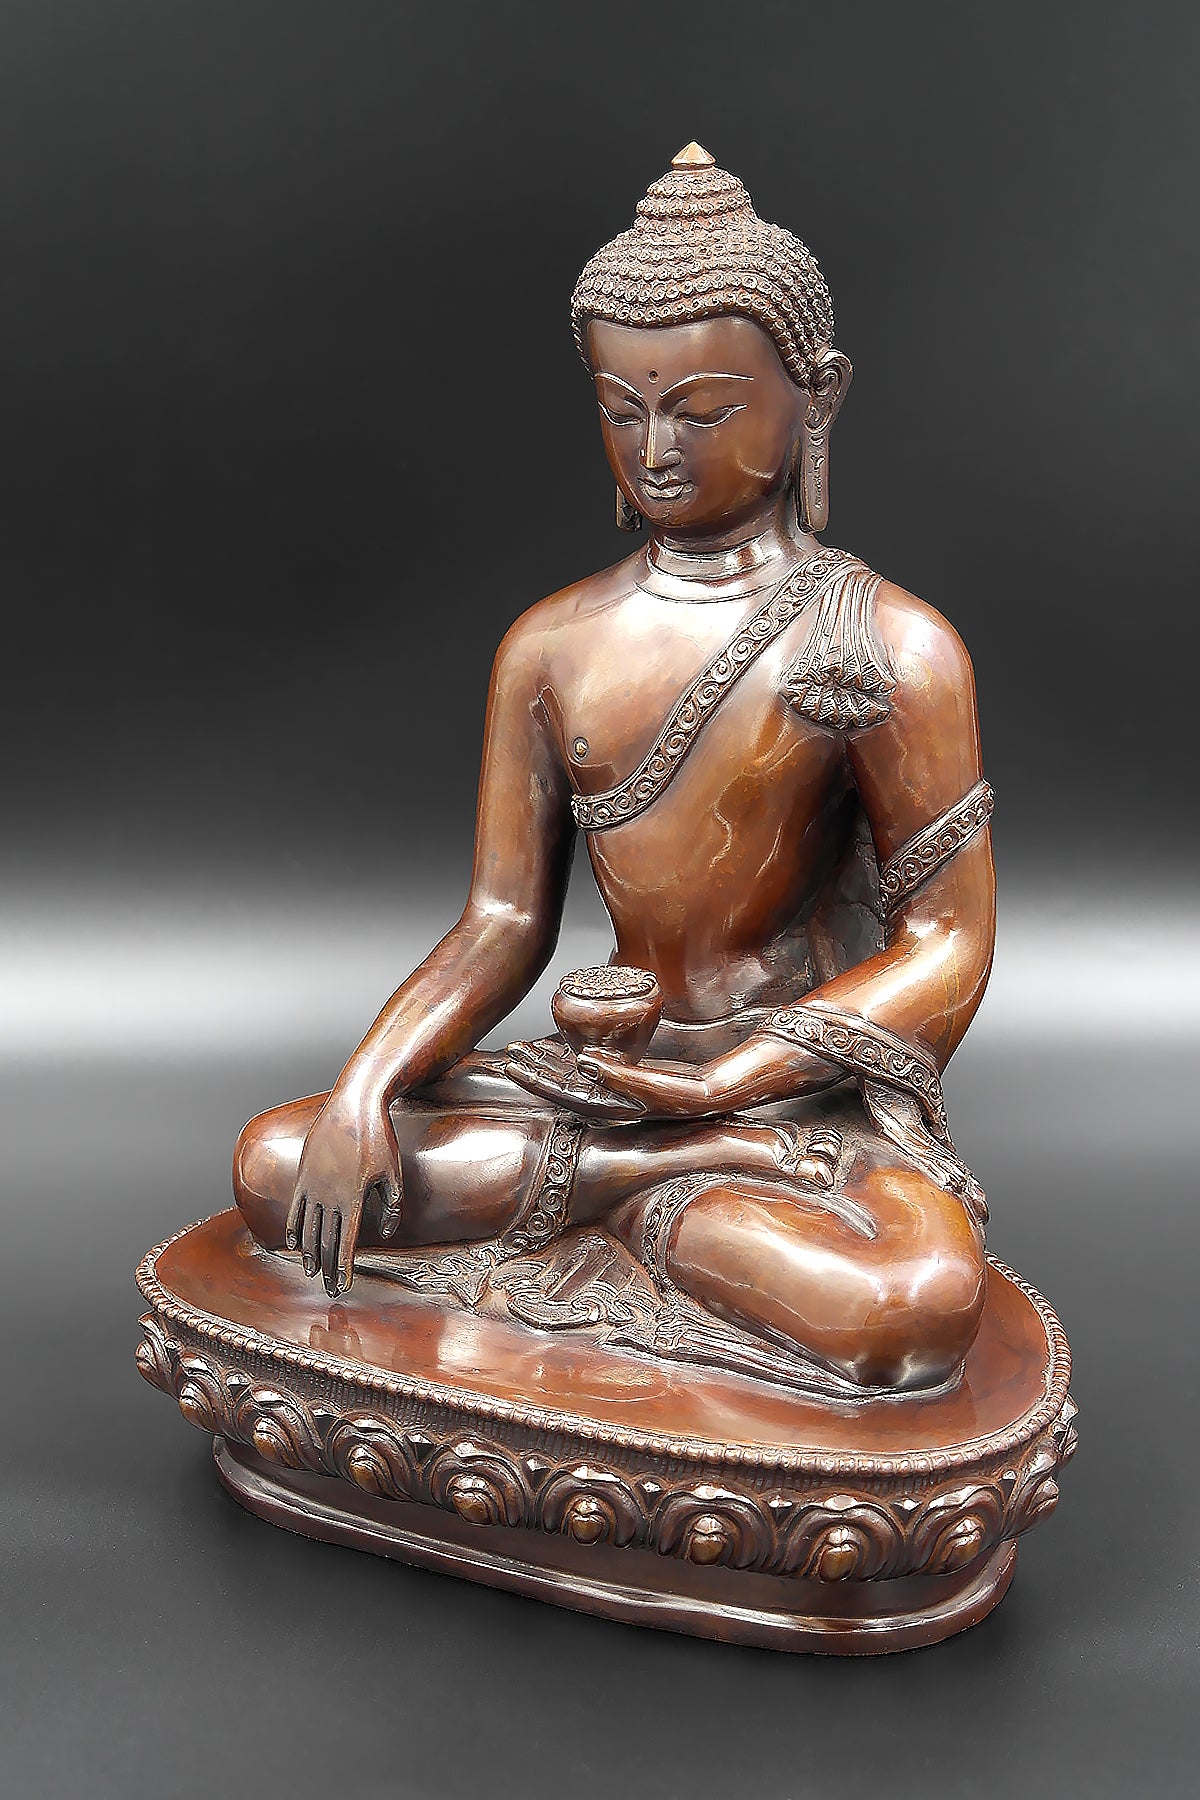 Plain Copper Oxidized Shakyamuni Buddha Statue 9"